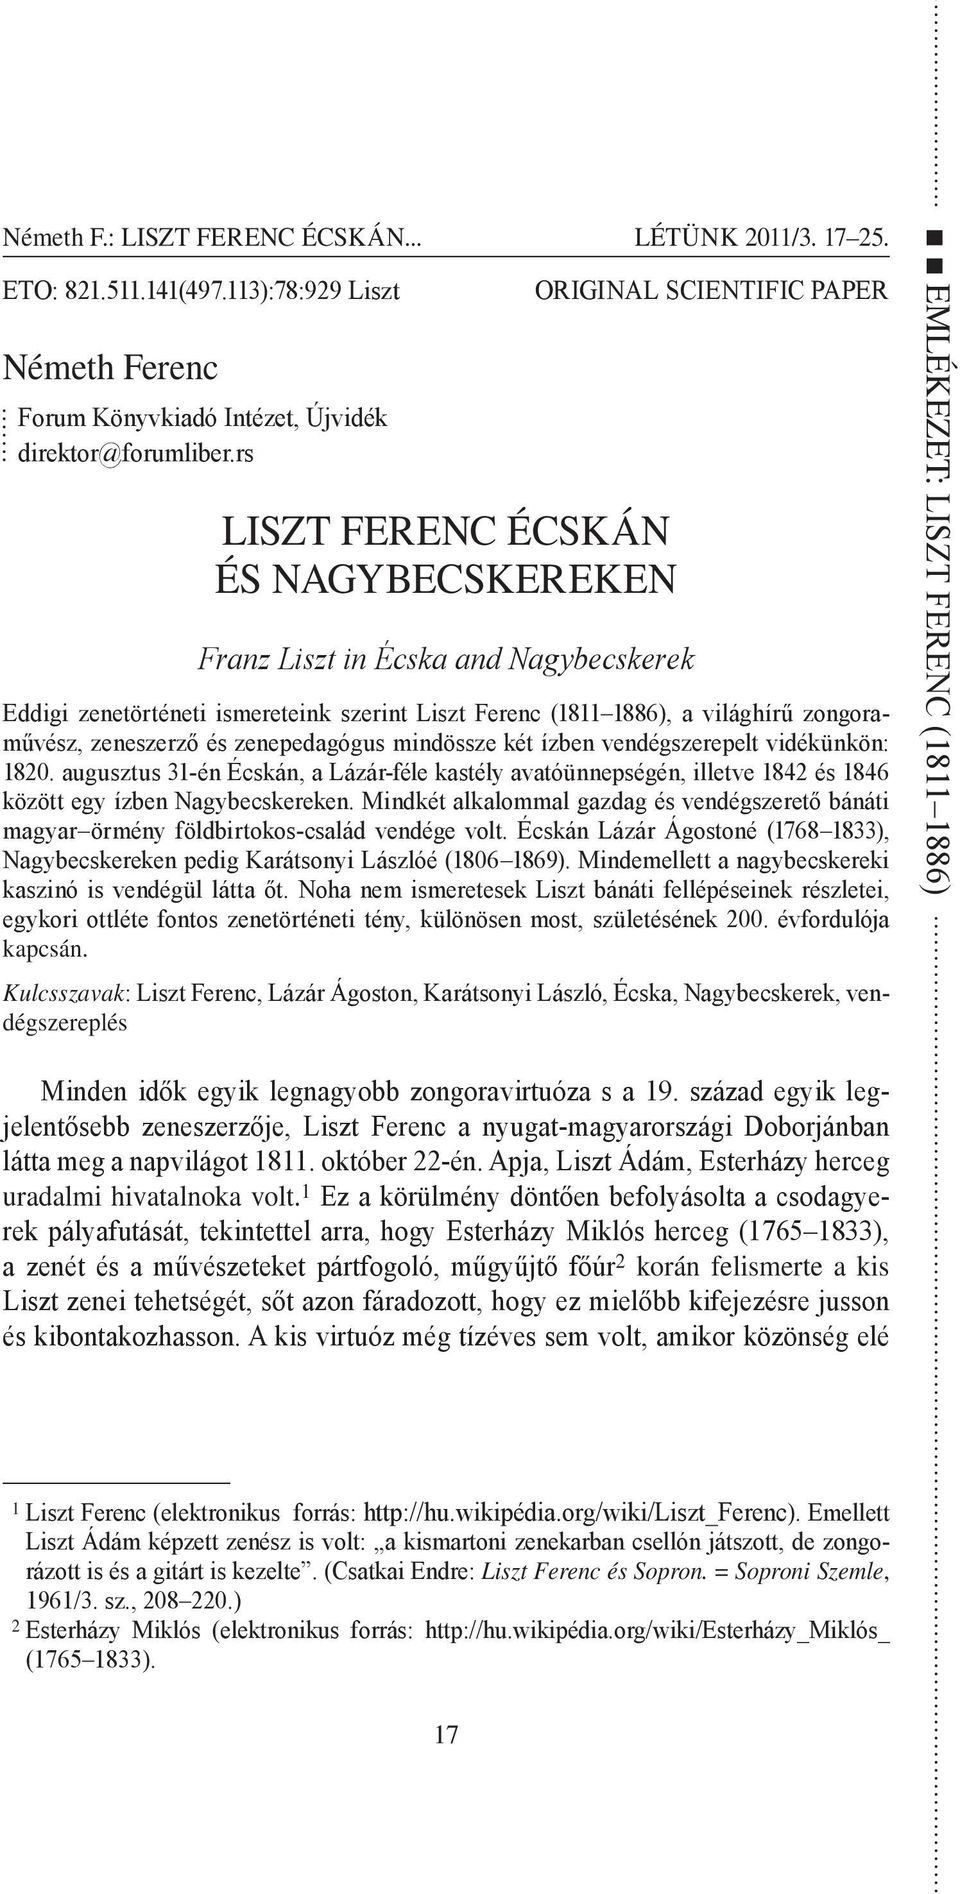 ORIGINAL SCIENTIFIC PAPER Eddigi zenetörténeti ismereteink szerint Liszt Ferenc (1811 1886), a világhírű zongoraművész, zeneszerző és zenepedagógus mindössze két ízben vendégszerepelt vidékünkön: